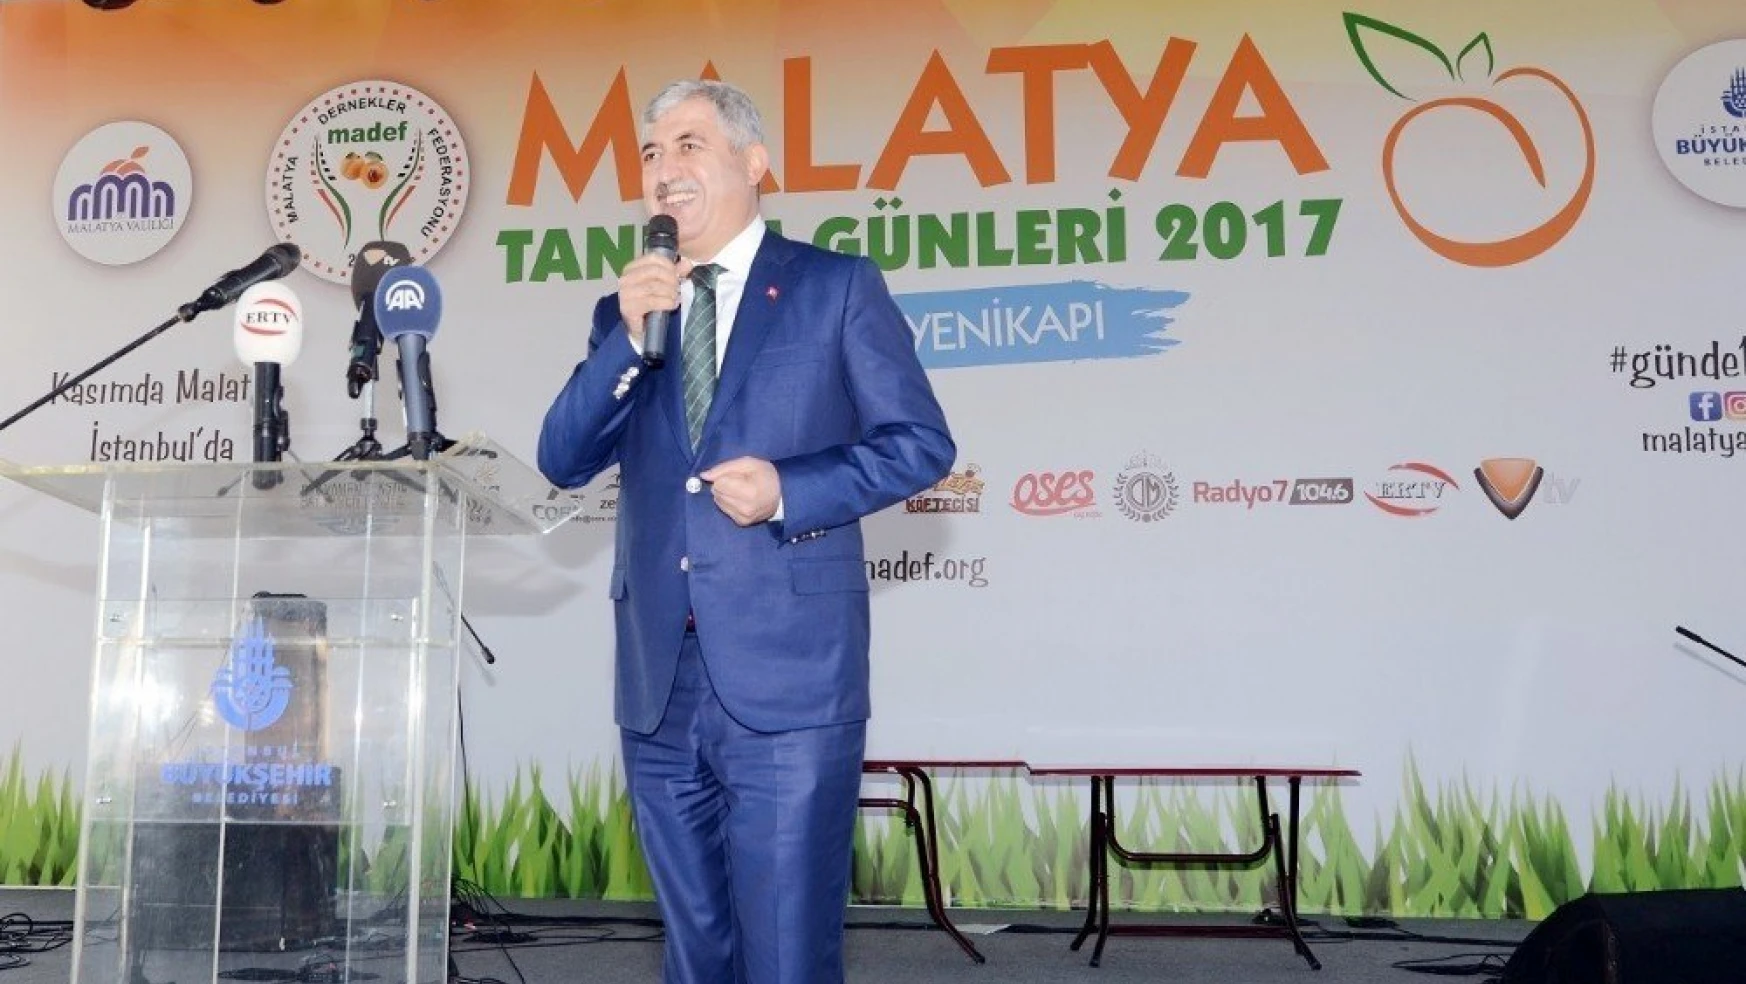 Bakan Tüfenkci, Malatya Tanıtım Günlerine katıldı
